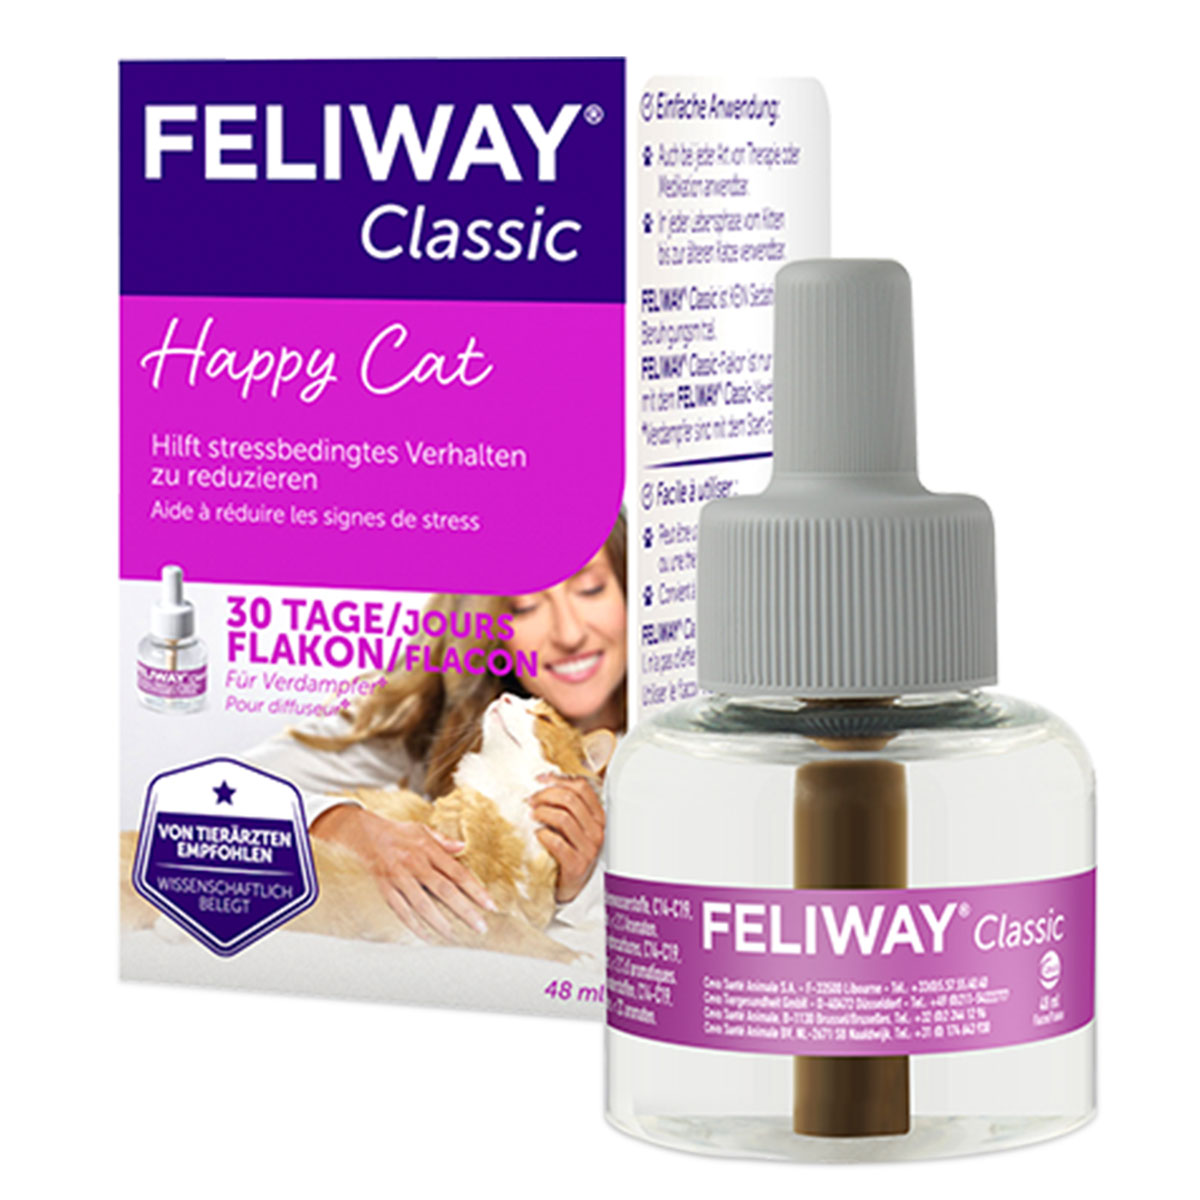 Feliway® Classic difuzér, náhradní náplň na 1 měsíc, 48 ml 48 ml